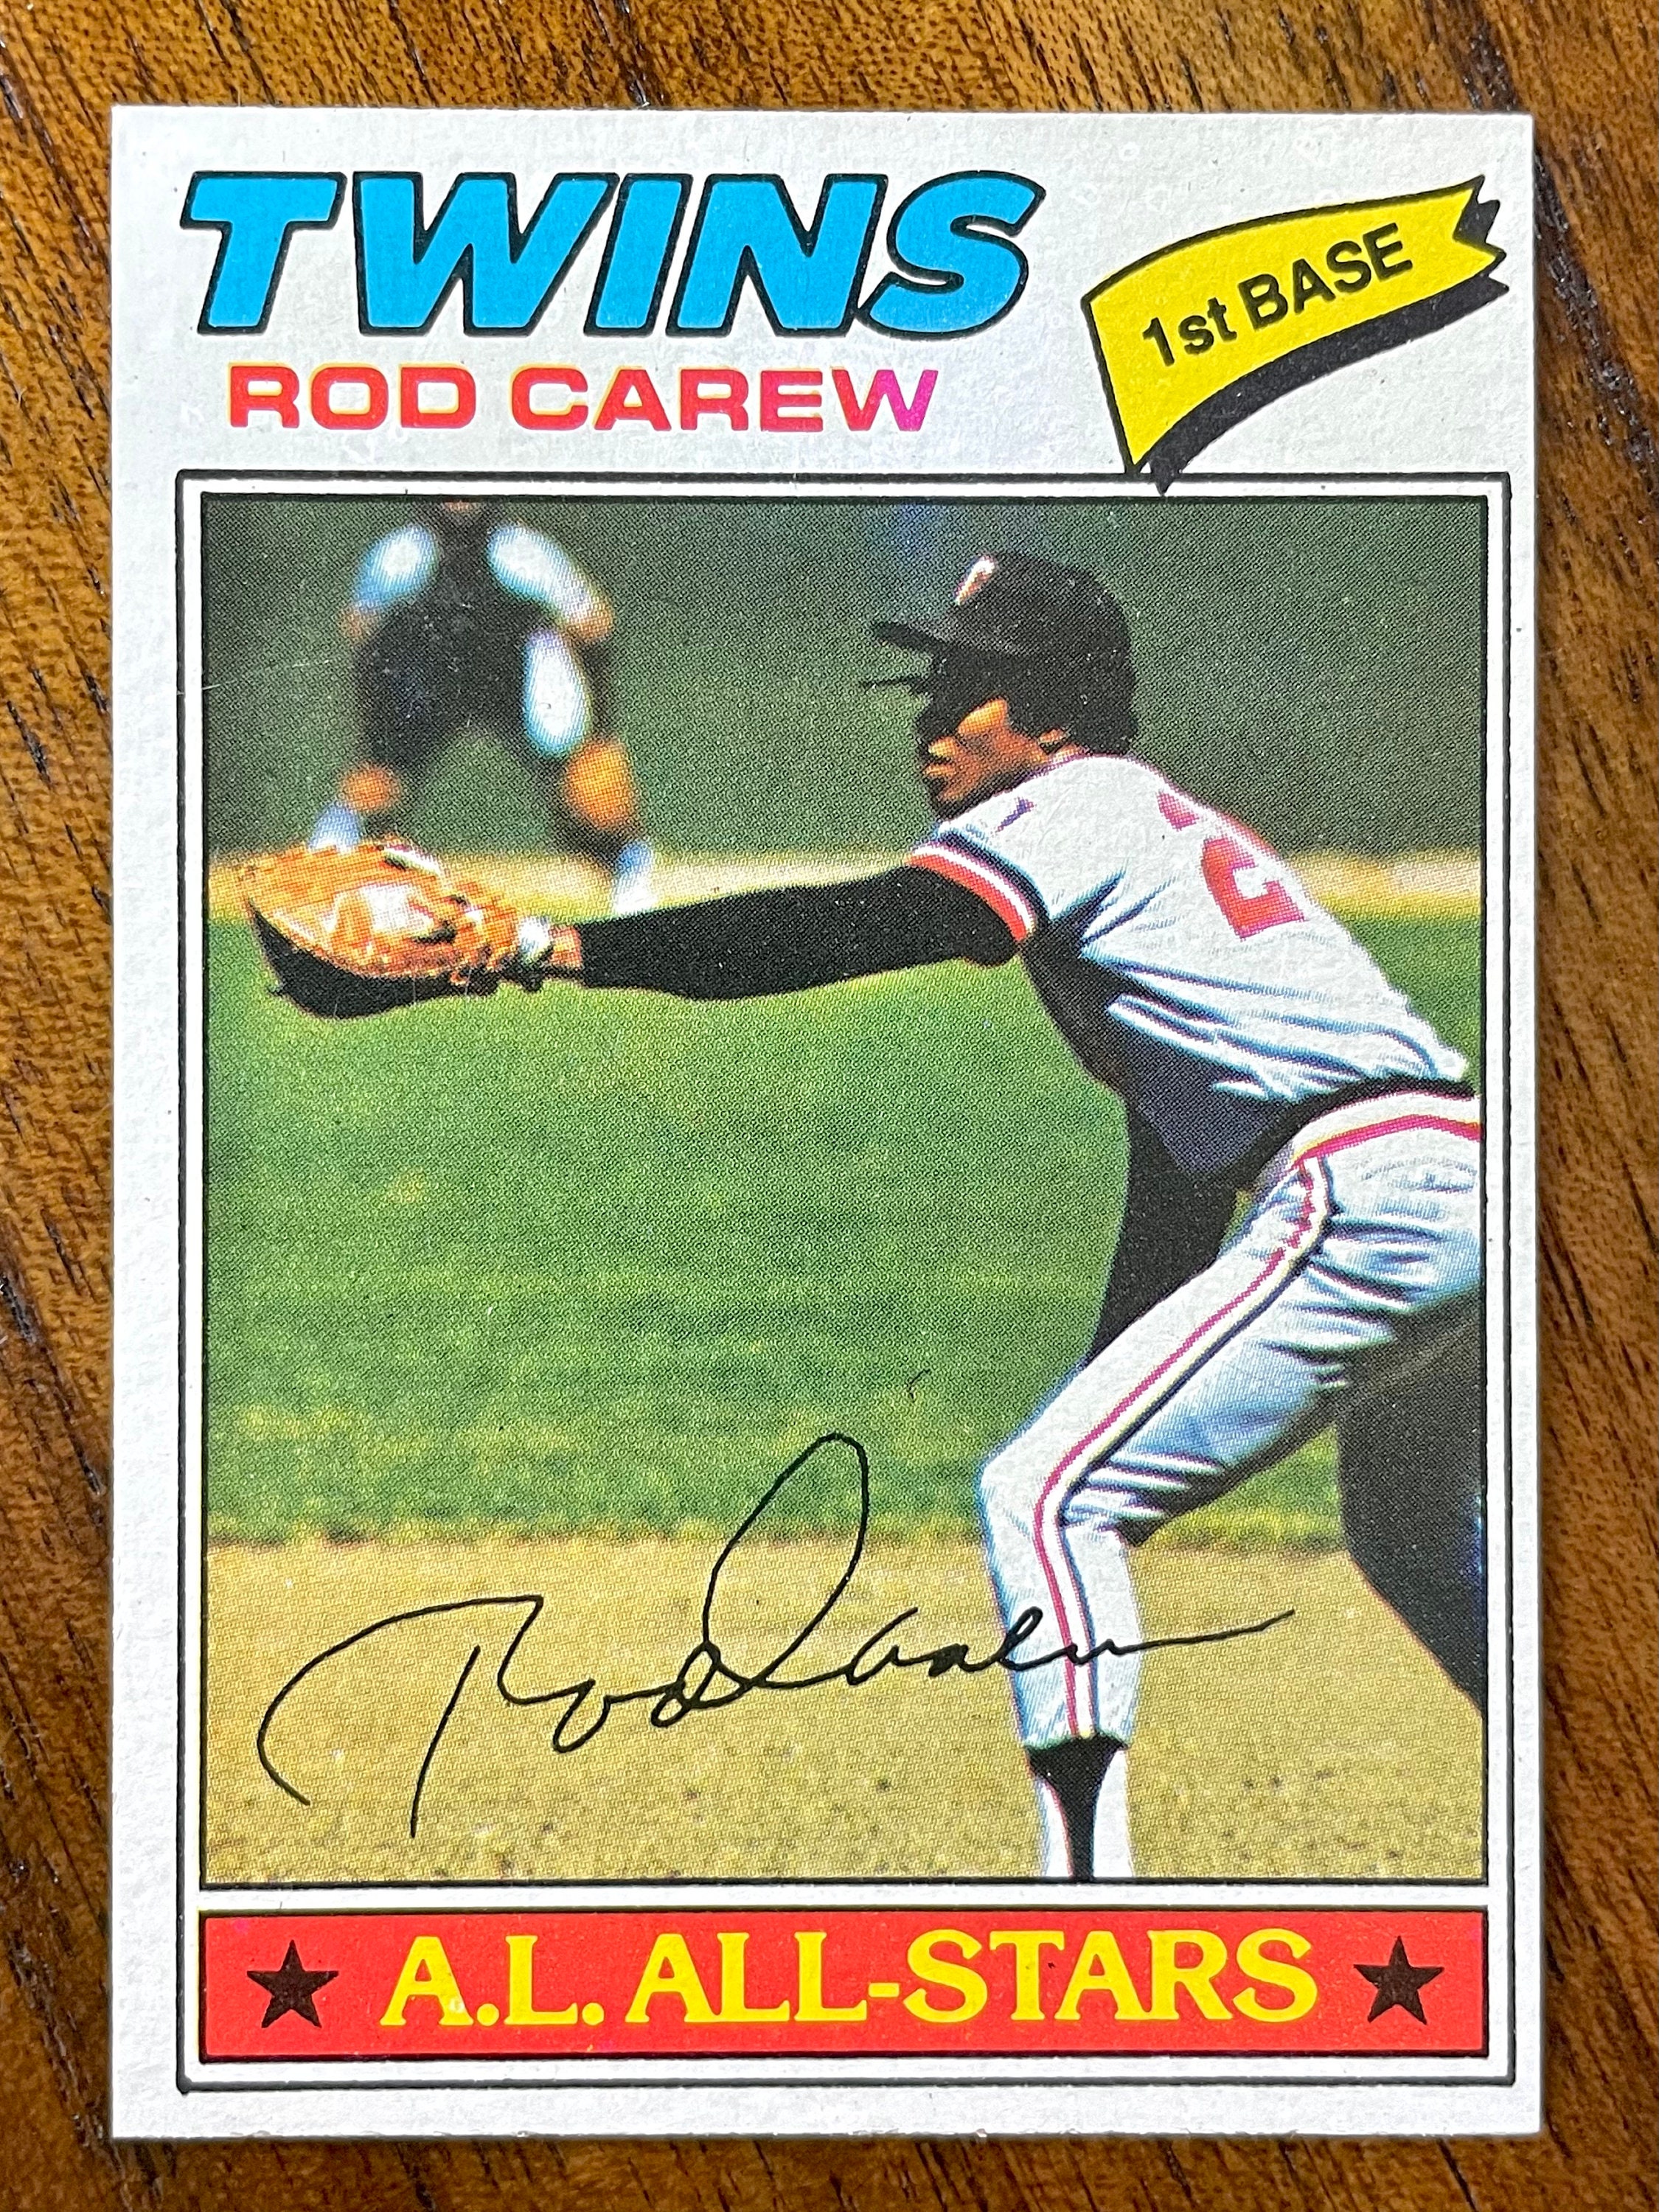 Top Rod Carew Vintage Cards, Rookies, Autographs